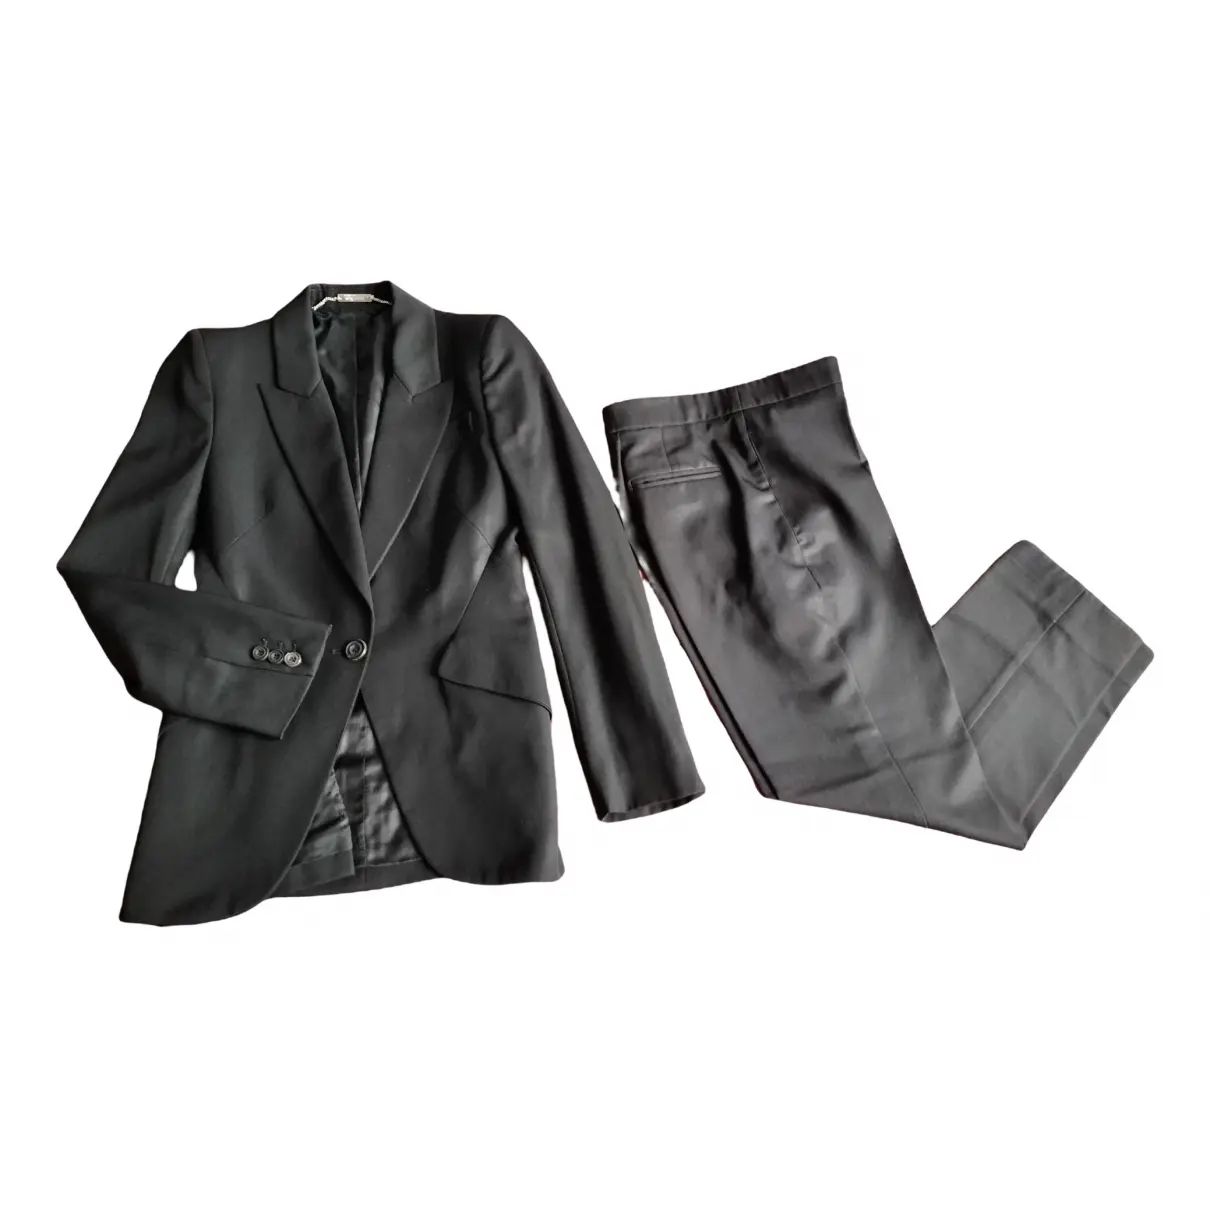 Suit jacket Alexander McQueen